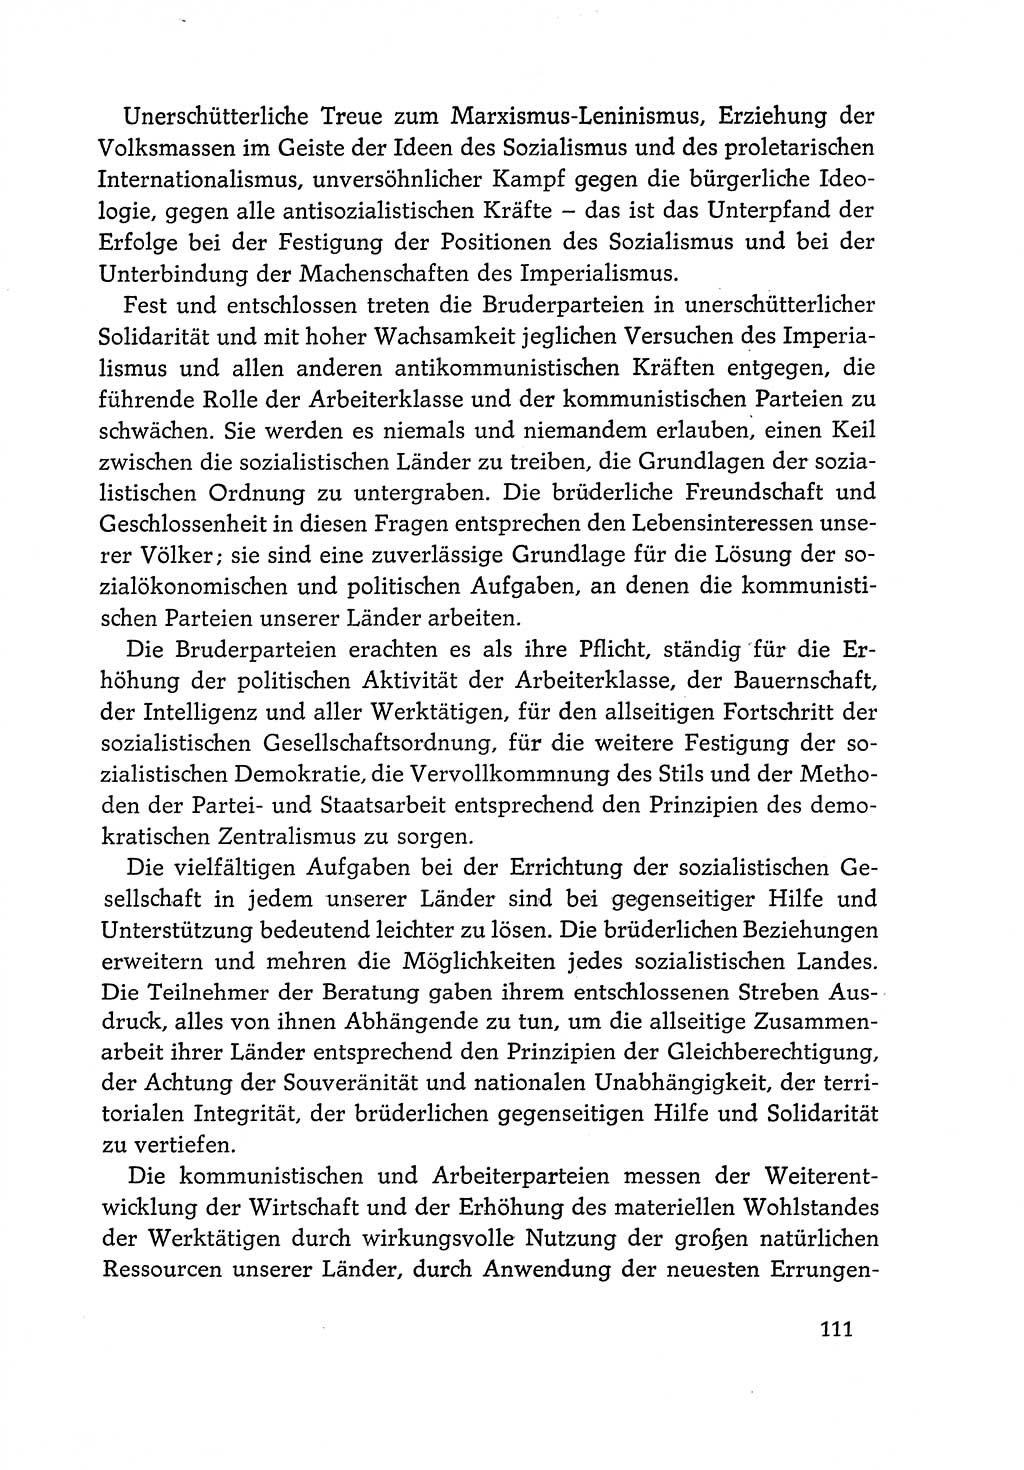 Dokumente der Sozialistischen Einheitspartei Deutschlands (SED) [Deutsche Demokratische Republik (DDR)] 1968-1969, Seite 111 (Dok. SED DDR 1968-1969, S. 111)